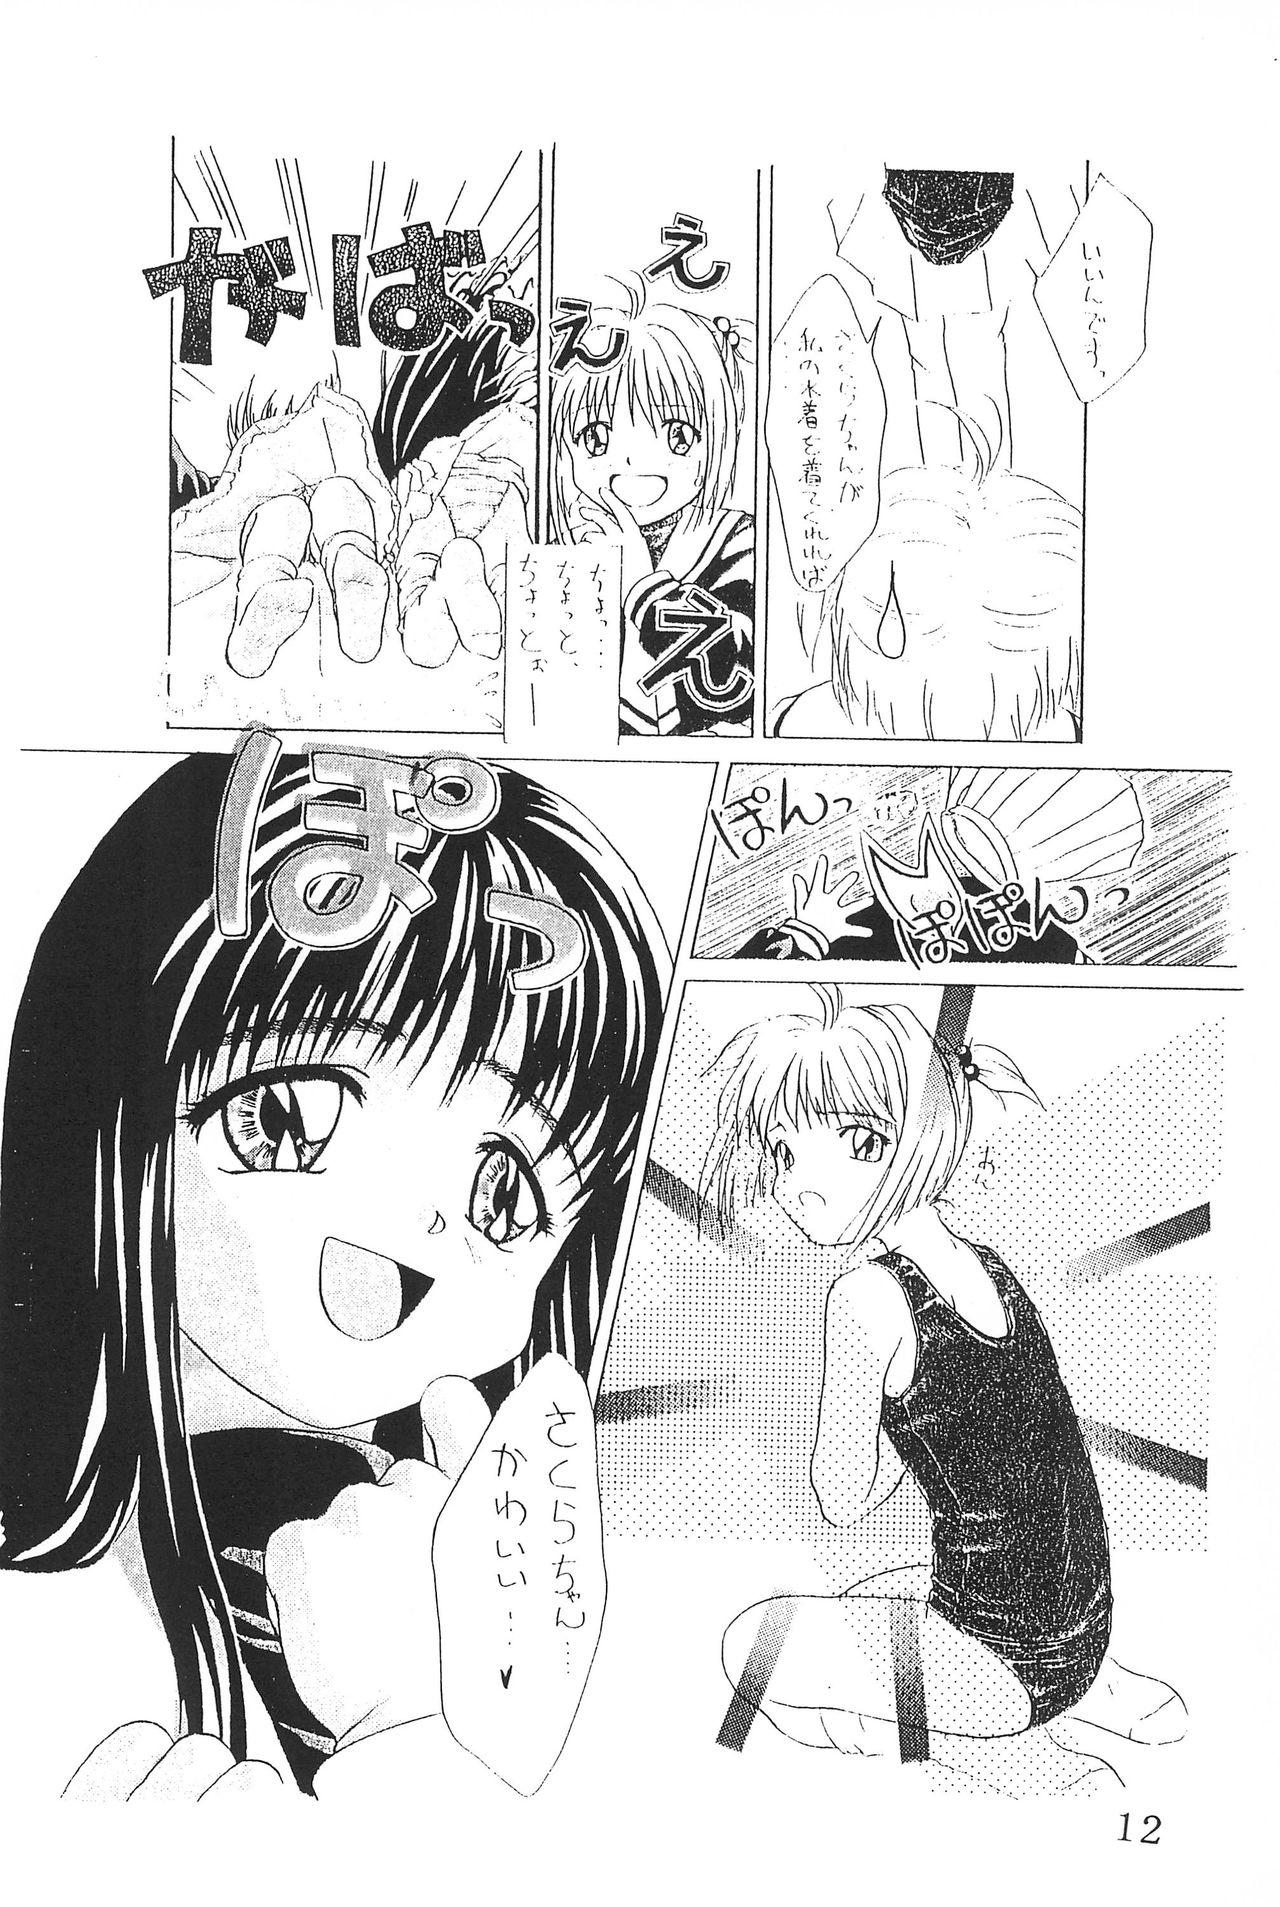 Best Blowjob Ever Watashi no Kare wa Sushi Shokunin - Cardcaptor sakura Porno - Page 12